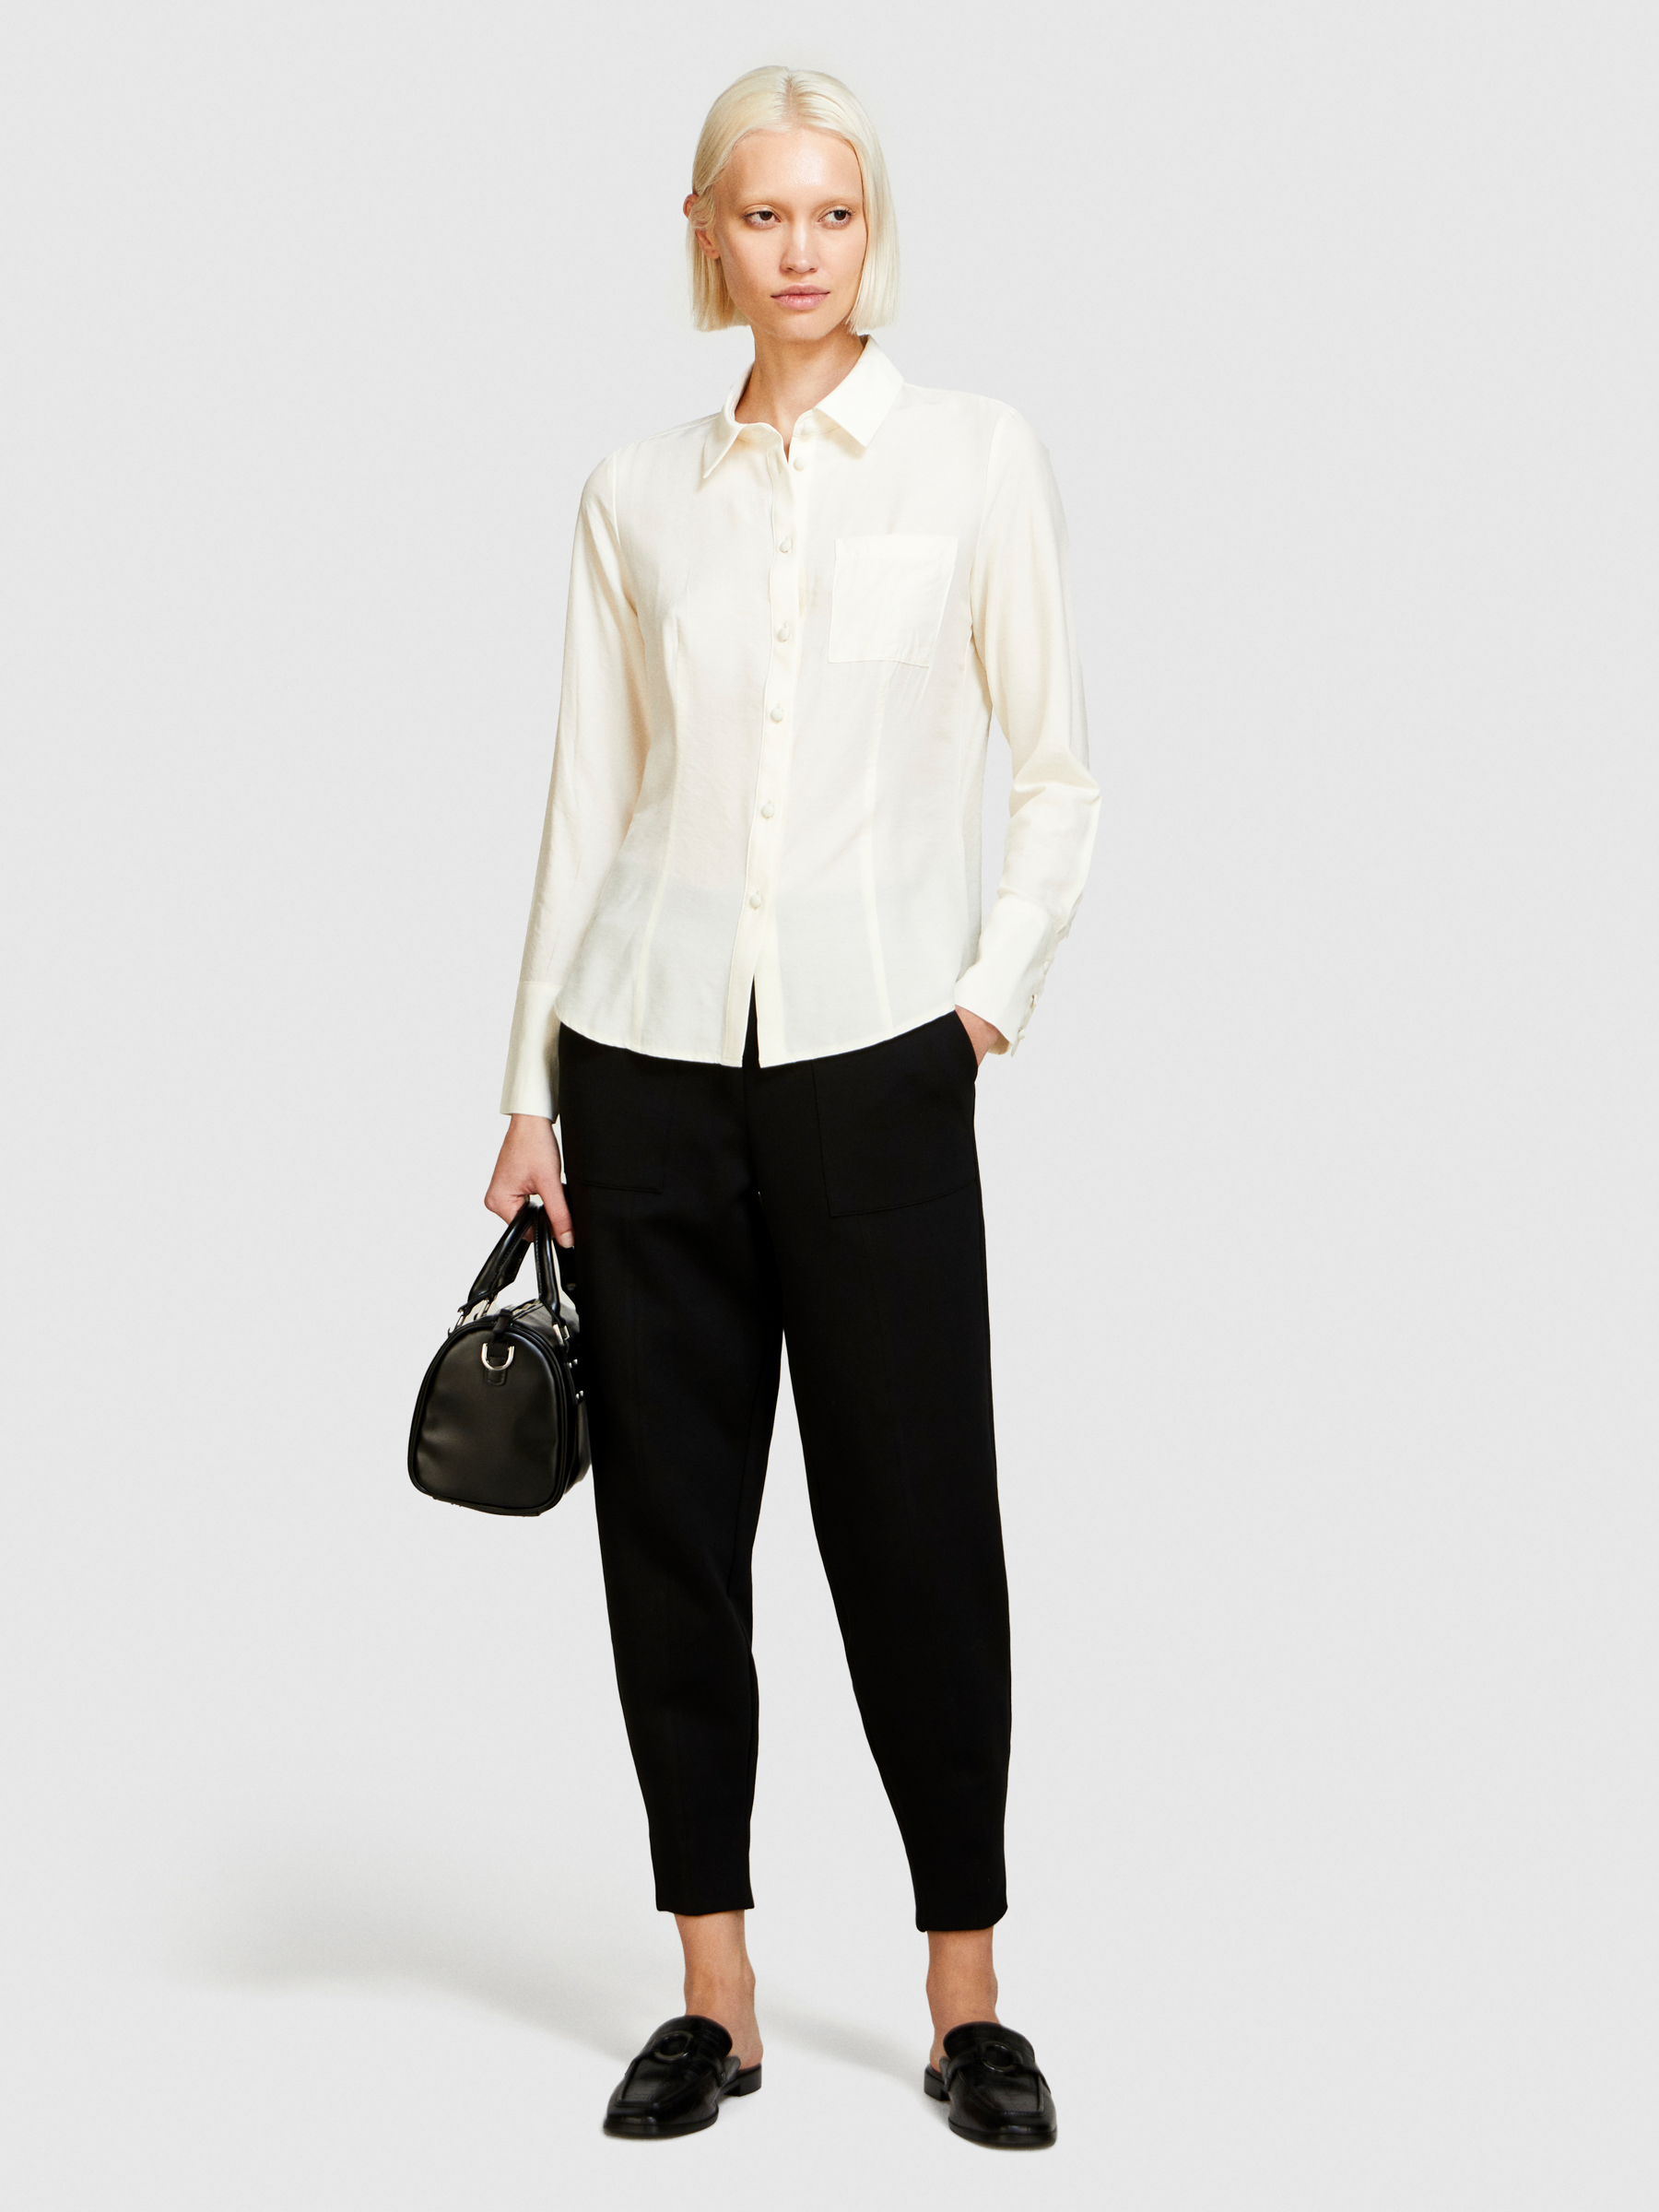 Sisley - Mixed Fabric Shirt, Woman, Creamy White, Size: XS